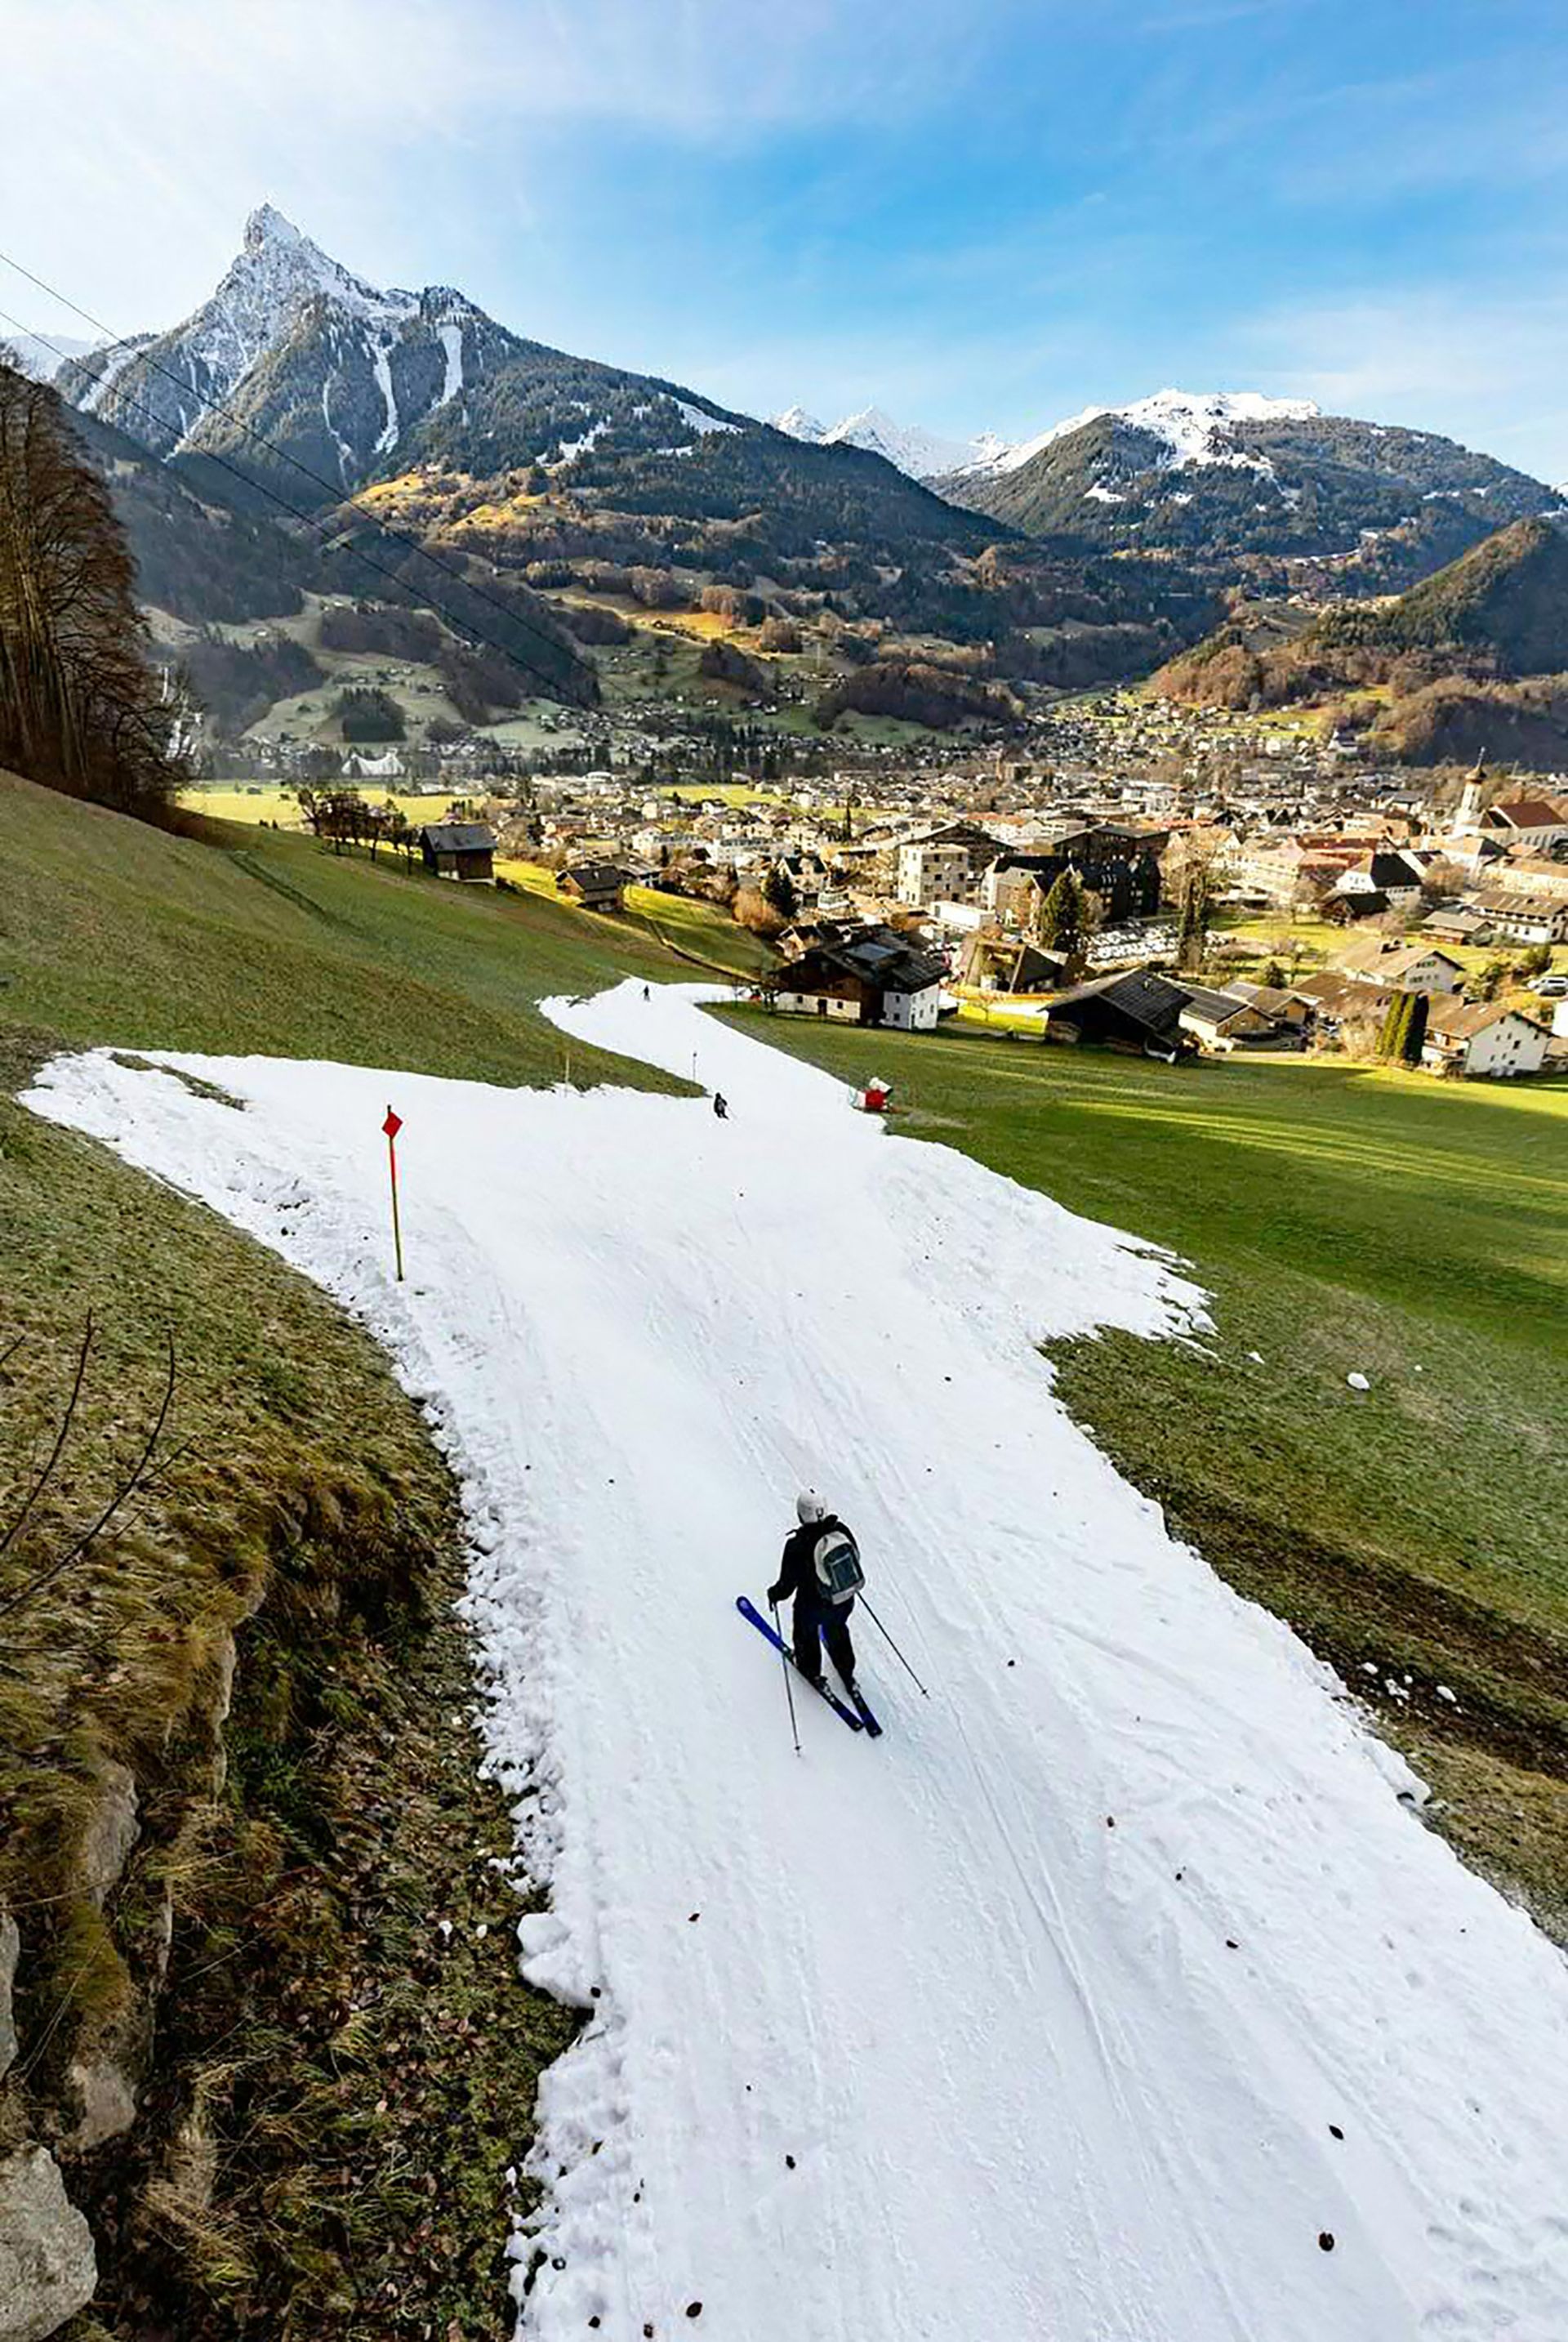 Un touriste skieur glisse sur une piste de ski au milieu d’espaces verts à Schruns, en Autriche, le 28 décembre 2022. Comme d’autres régions d’Europe, l’Autriche a connu des températures relativement élevées au cours de la semaine dernière.